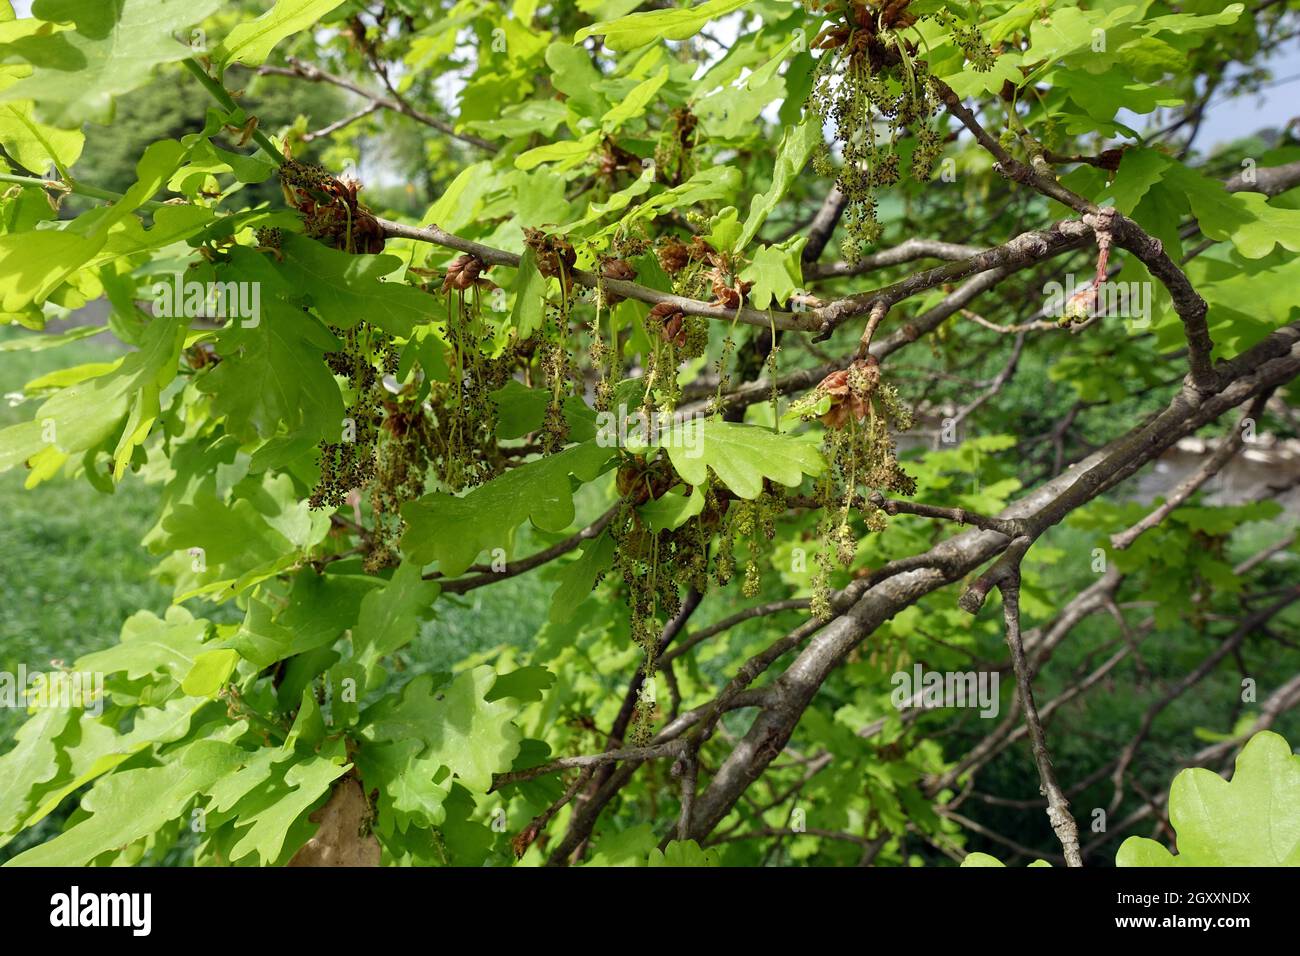 Stieleiche, Sommereiche oder Deutsche Eiche (Quercus robur, Syn. Quercus pedunculata) - männliche Blüte, Weilerswist, Nordrhein-Westfalen, Deutschland Stock Photo